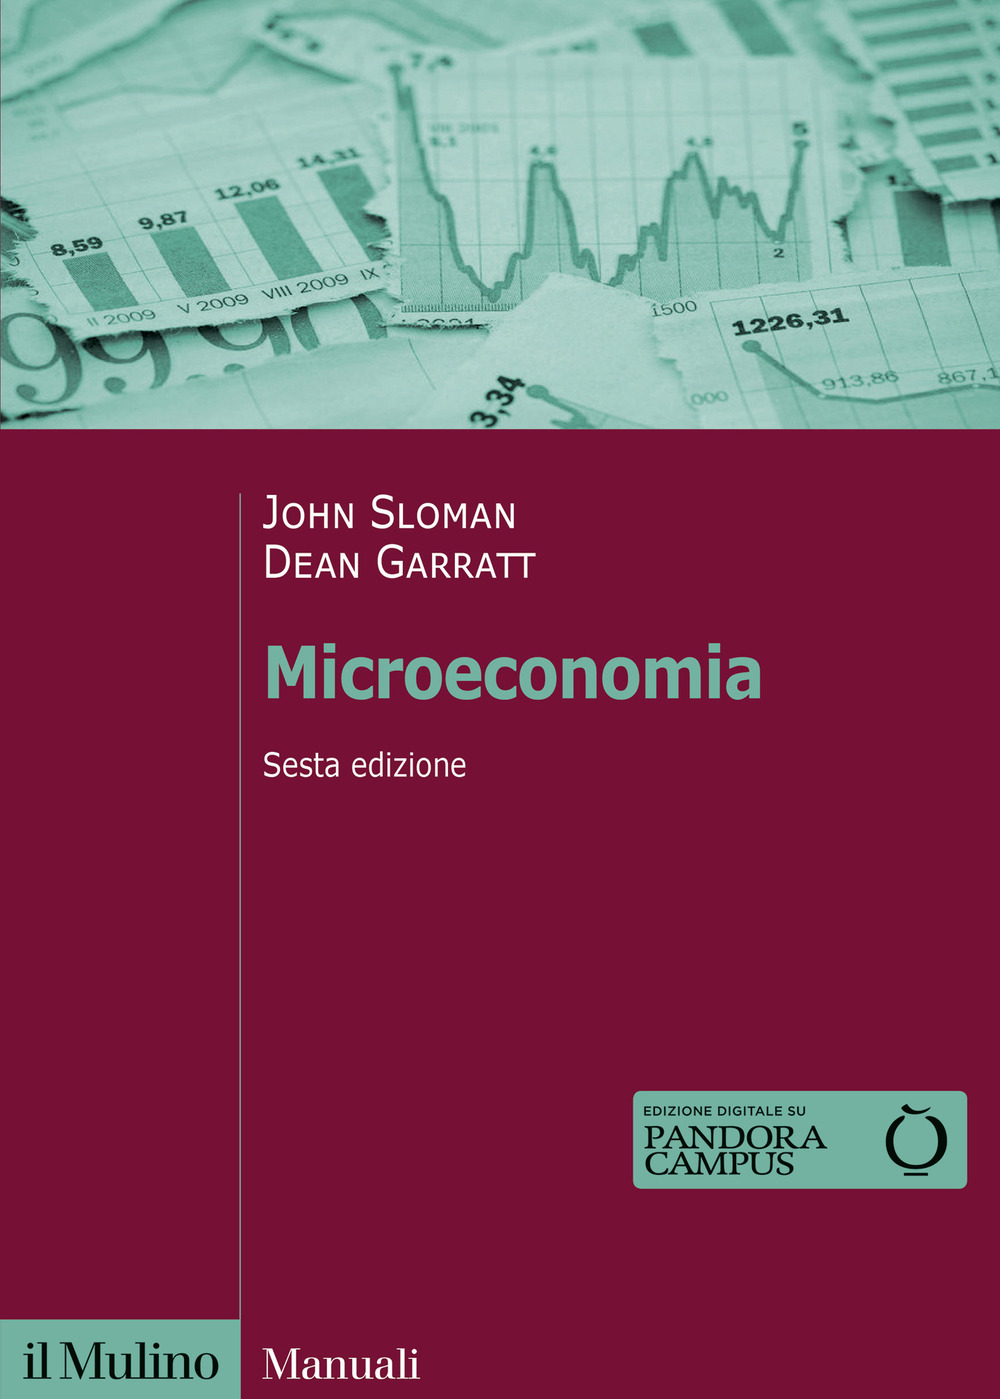 Libri John Sloman / Dean Garratt - Microeconomia NUOVO SIGILLATO, EDIZIONE DEL 18/02/2022 SUBITO DISPONIBILE